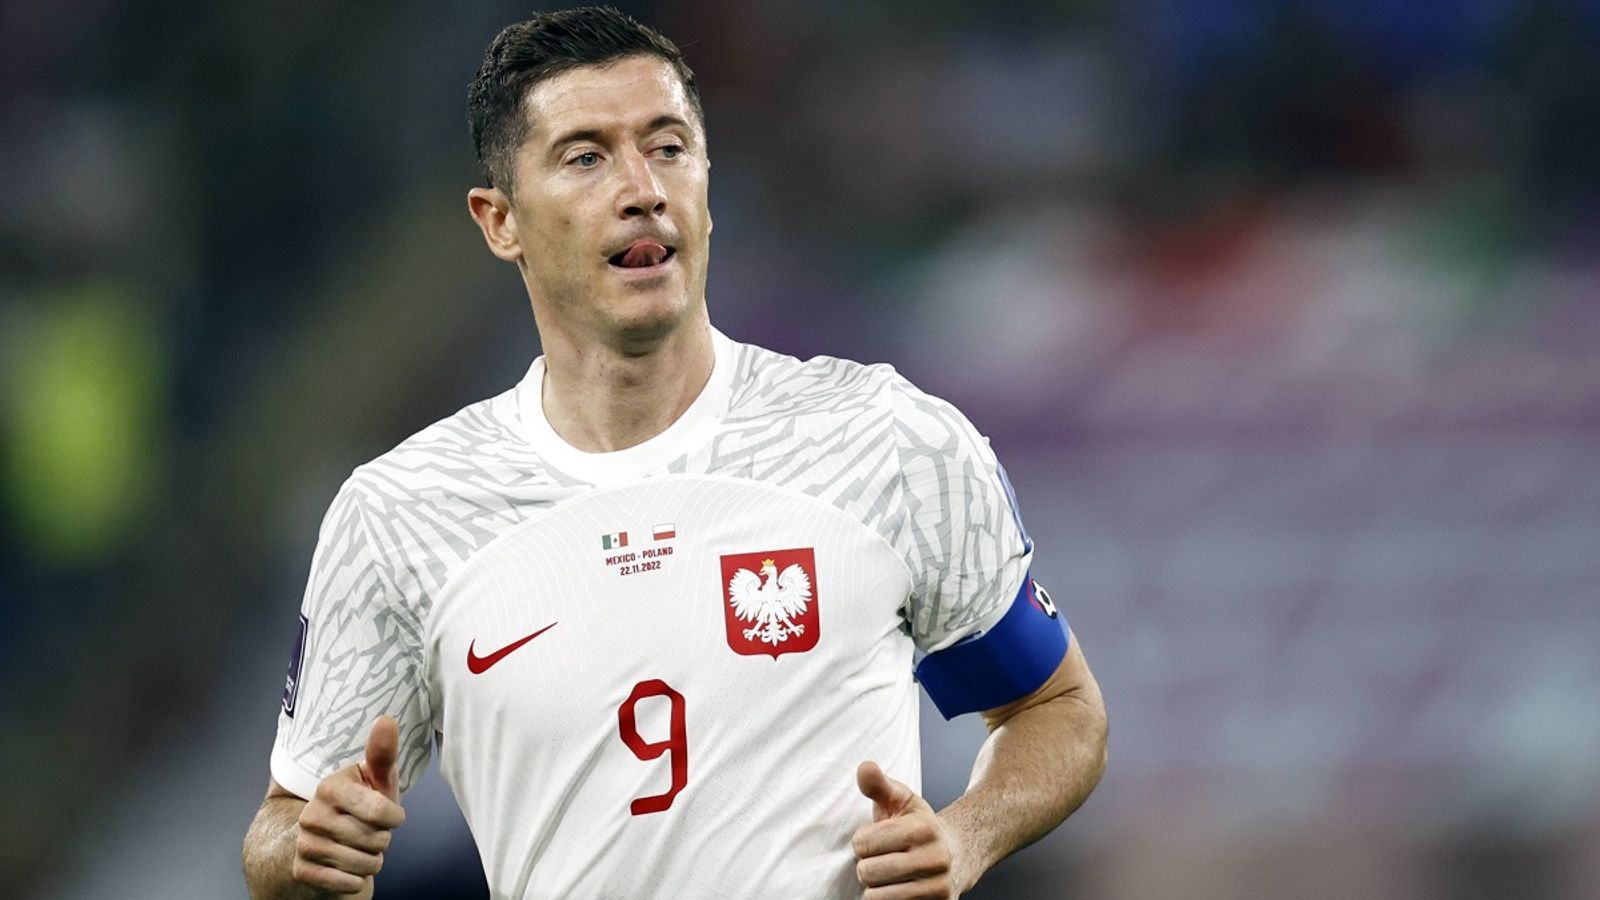 WM 2022 Keine Ukraine-Farben! Polen-Star Lewandowski trägt FIFA-Binde Fußball News Sky Sport